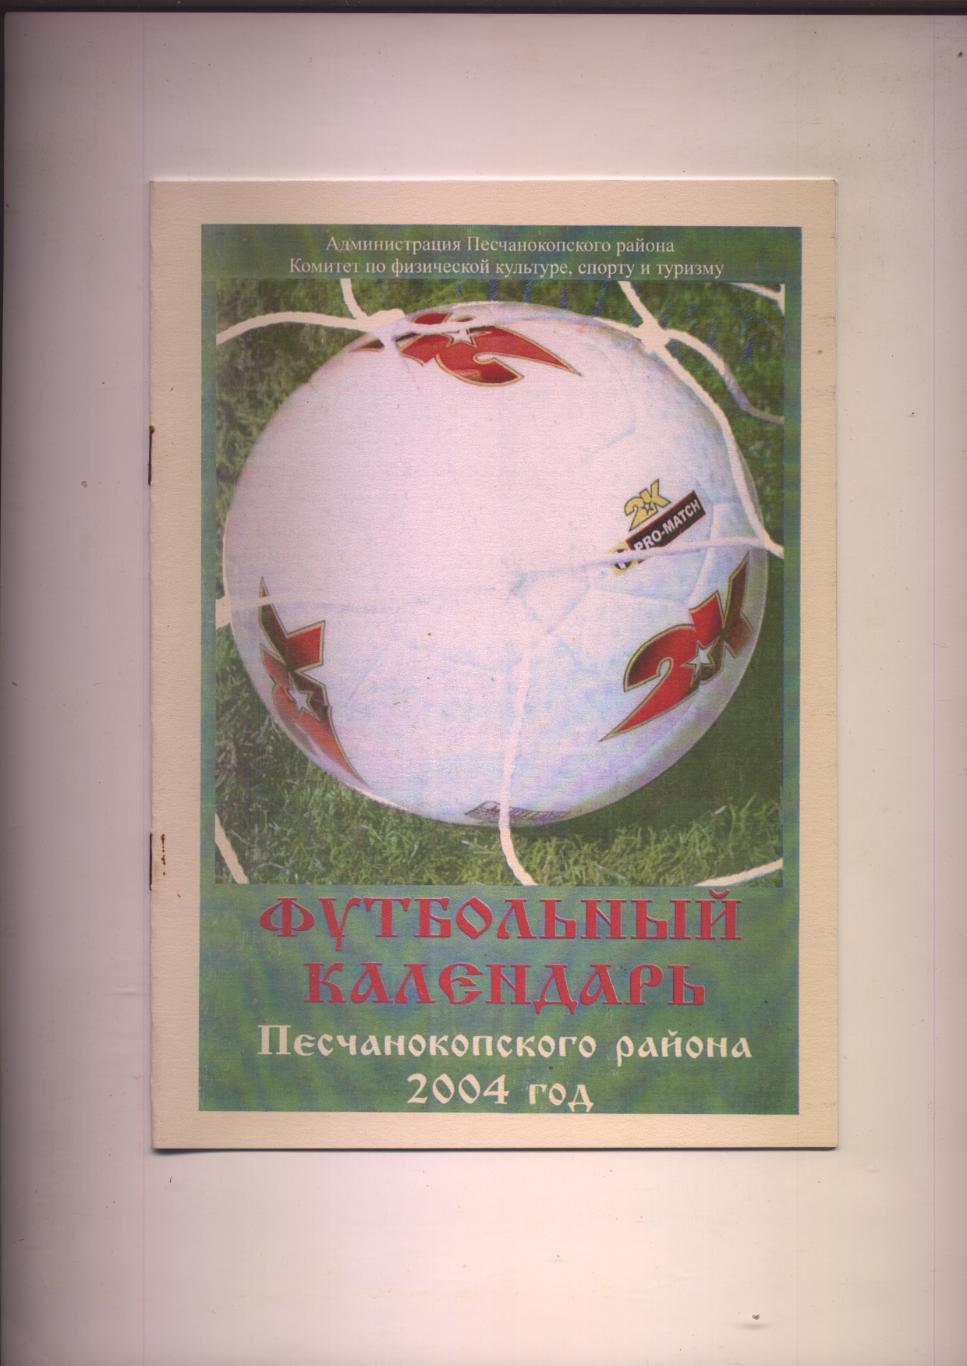 А Лунев Футбольный календарь Песчанокопского района 2004 История фото 1949-2004